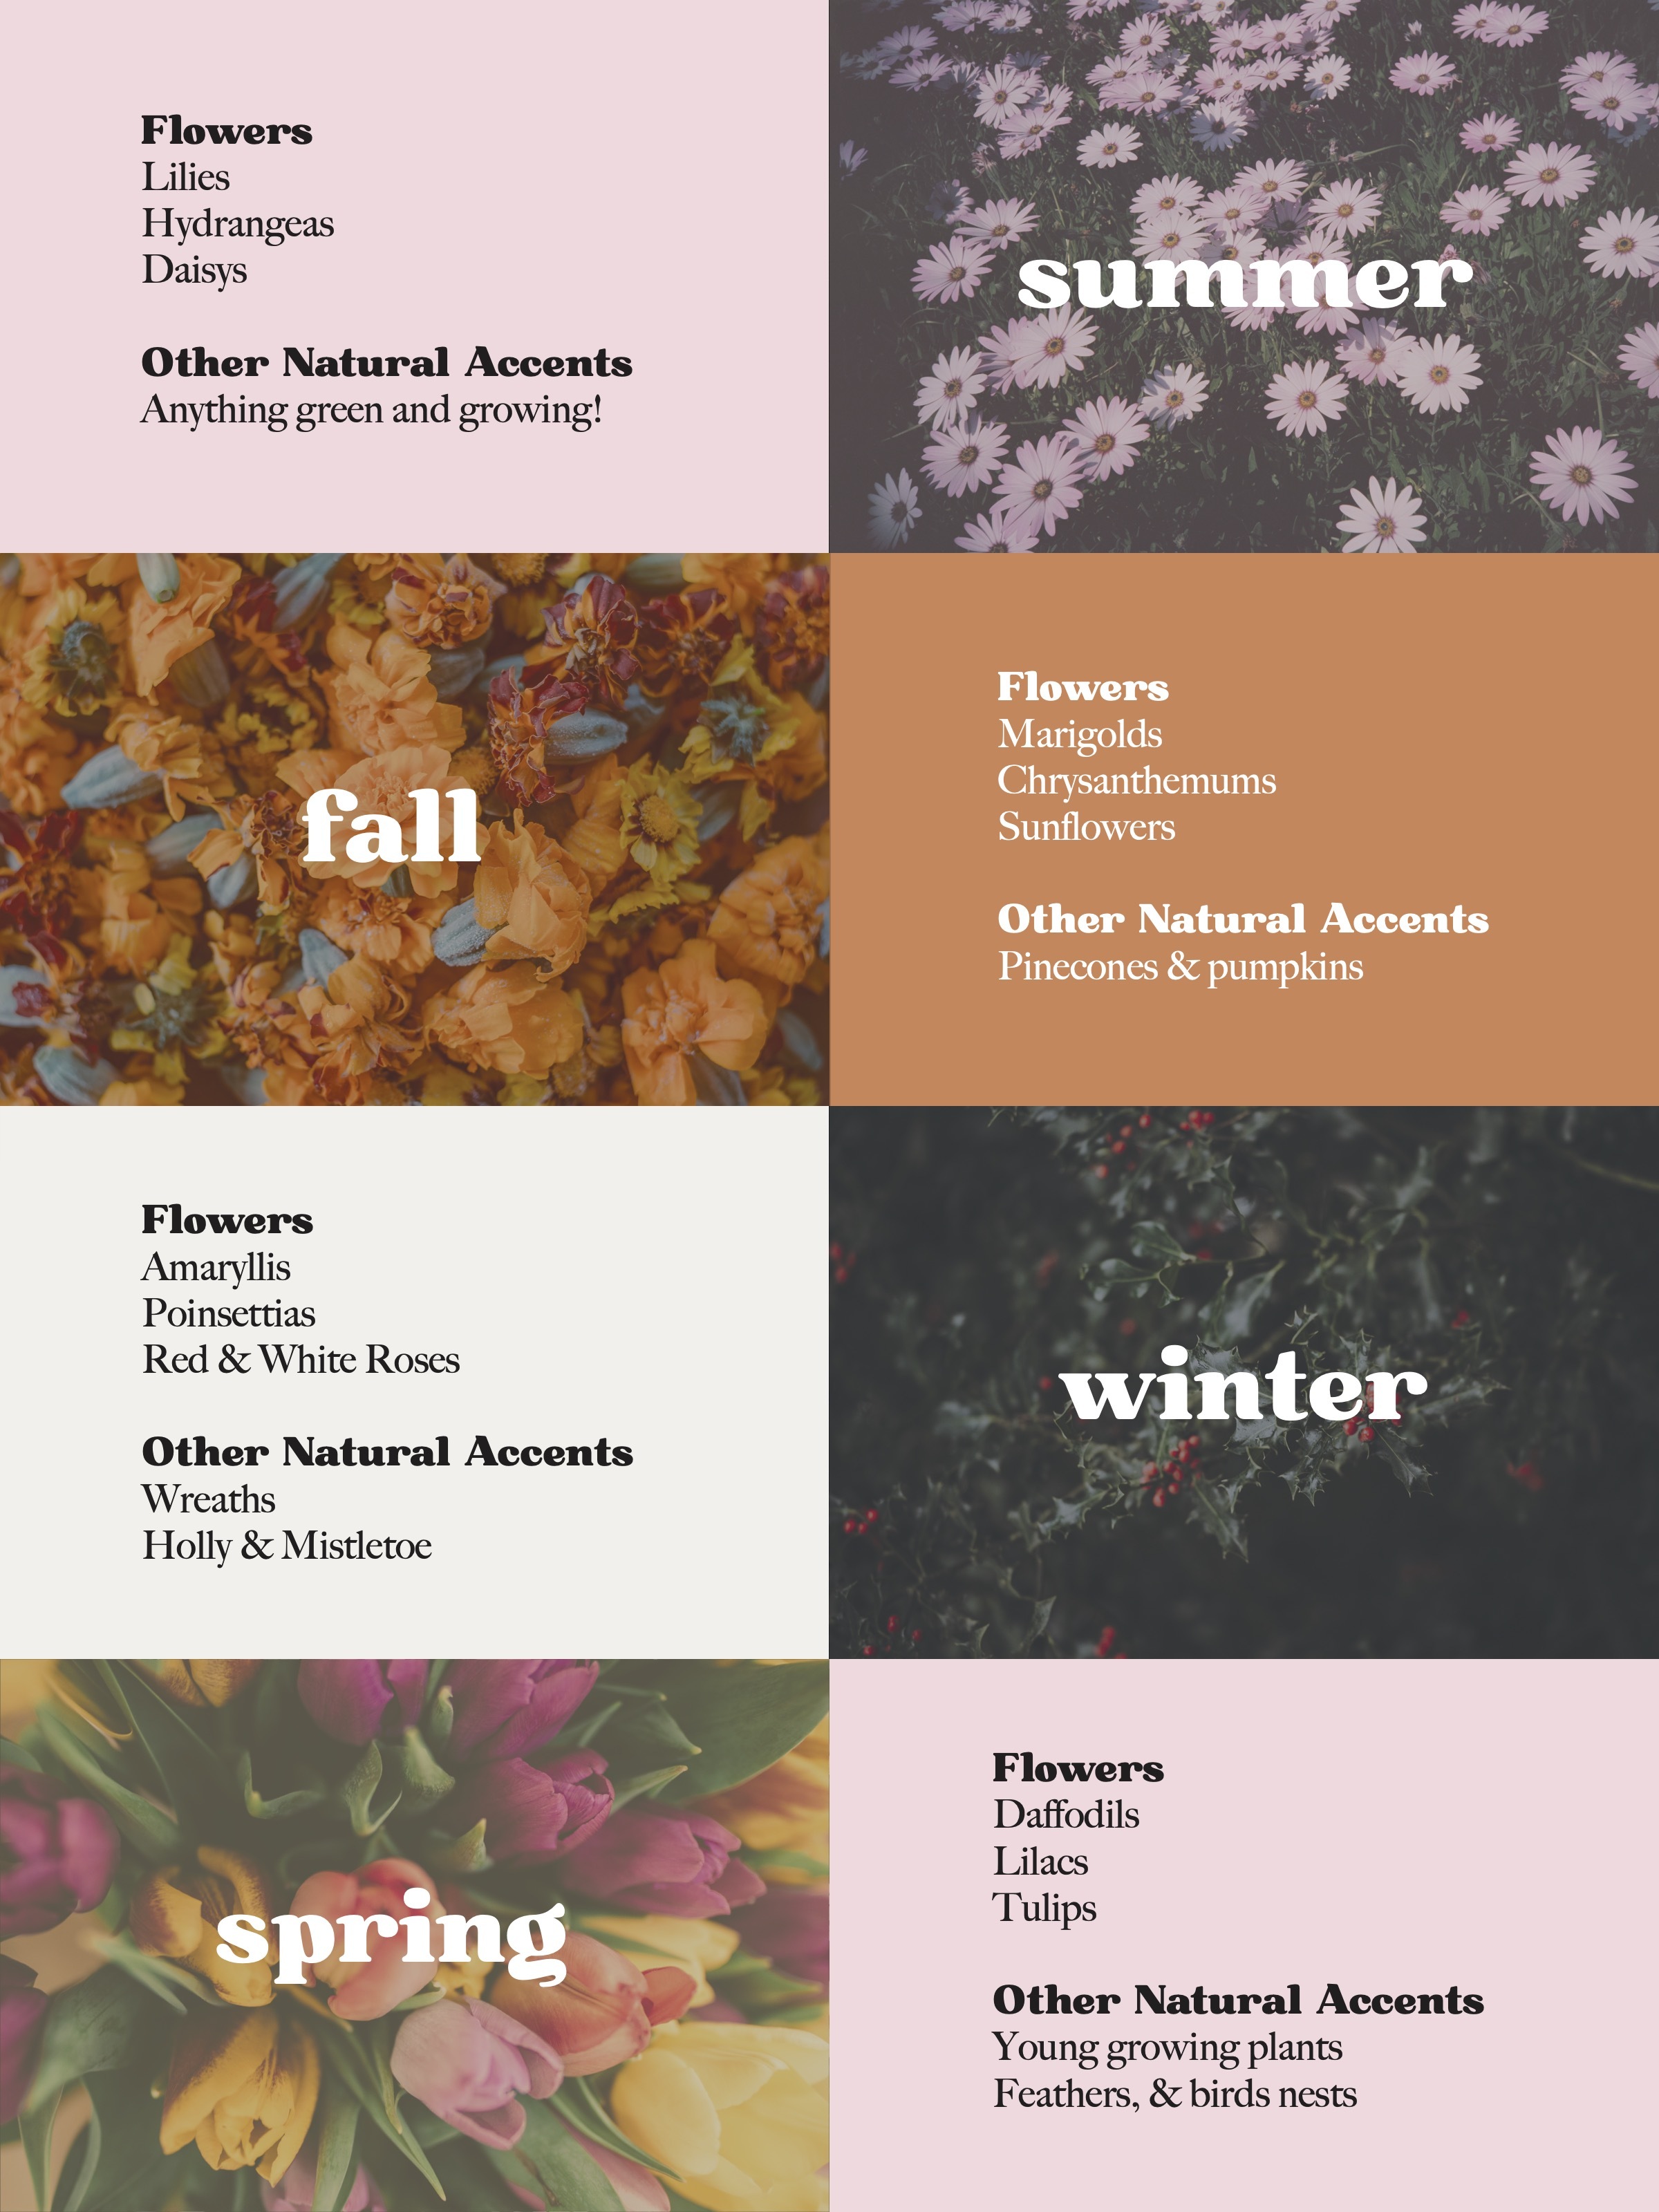 Seasonal Patterns